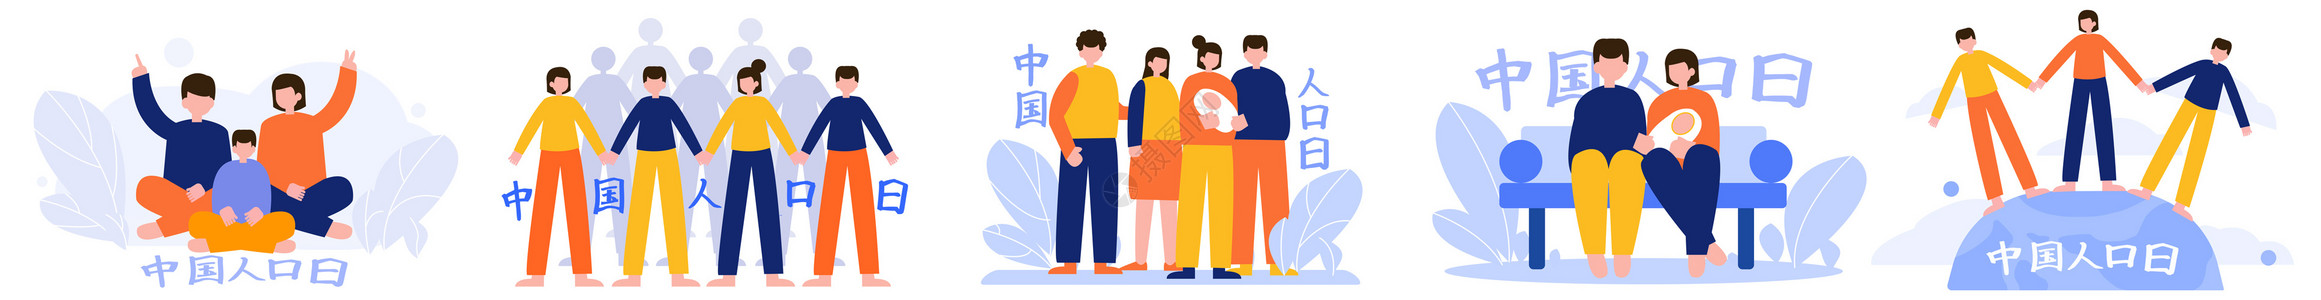 很多人疑问中国人口日社会家庭多人人物场景插图插画